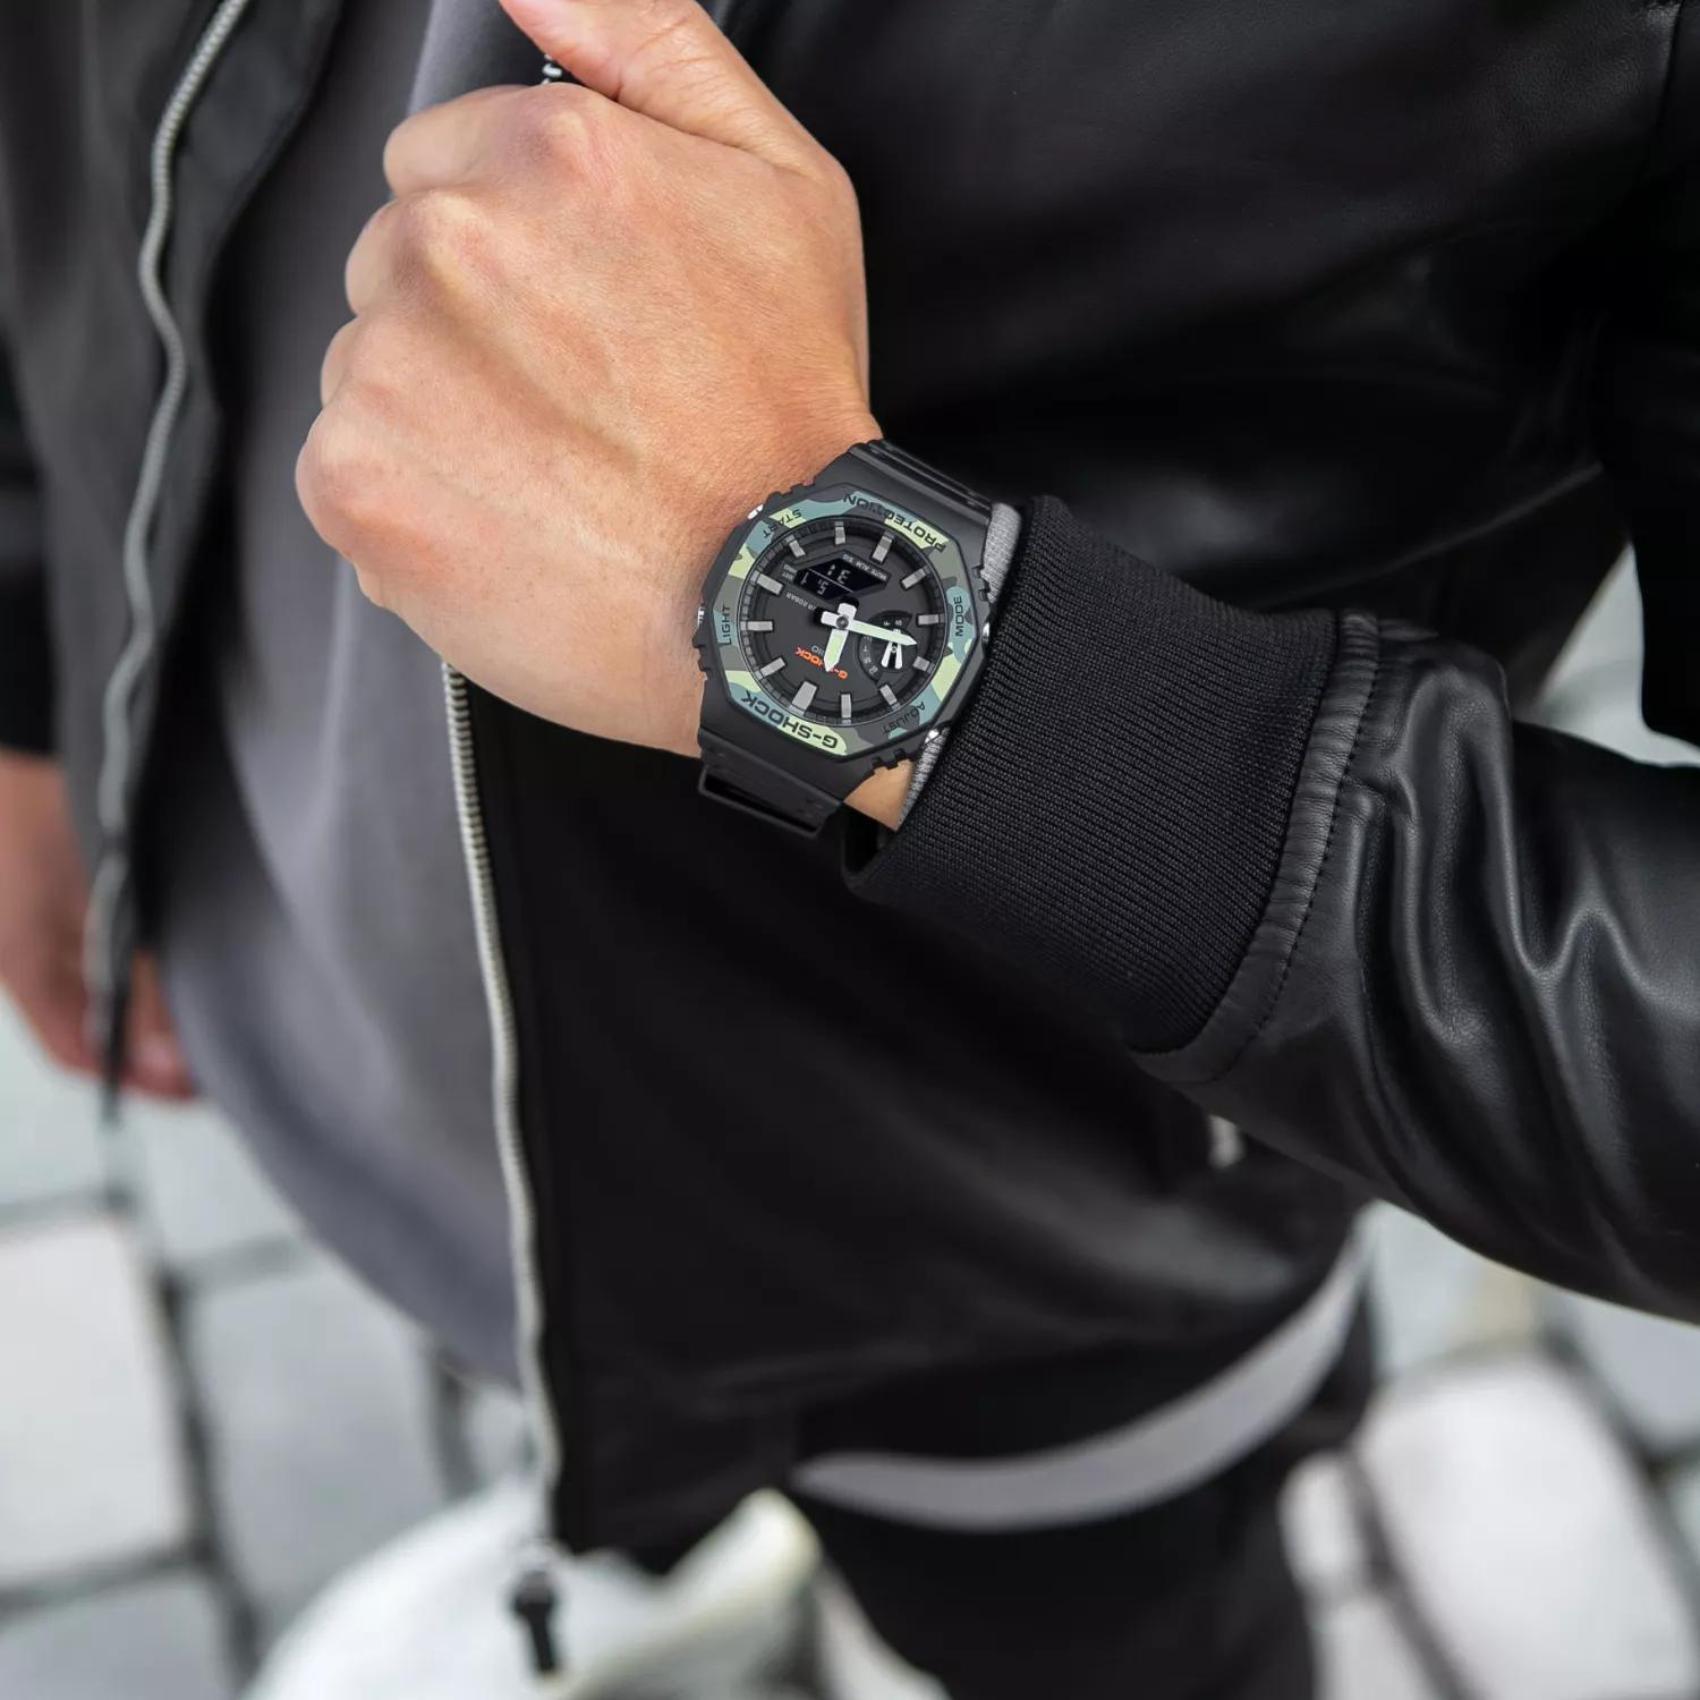 Ρολόι χρονογράφος Casio G-Shock GA-2100SU-1AER με μαύρο καουτσούκ λουράκι, μαύρο καντράν με camouflage μεγέθους 45.4mm anadigi κατάλληλο για καταδύσεις.